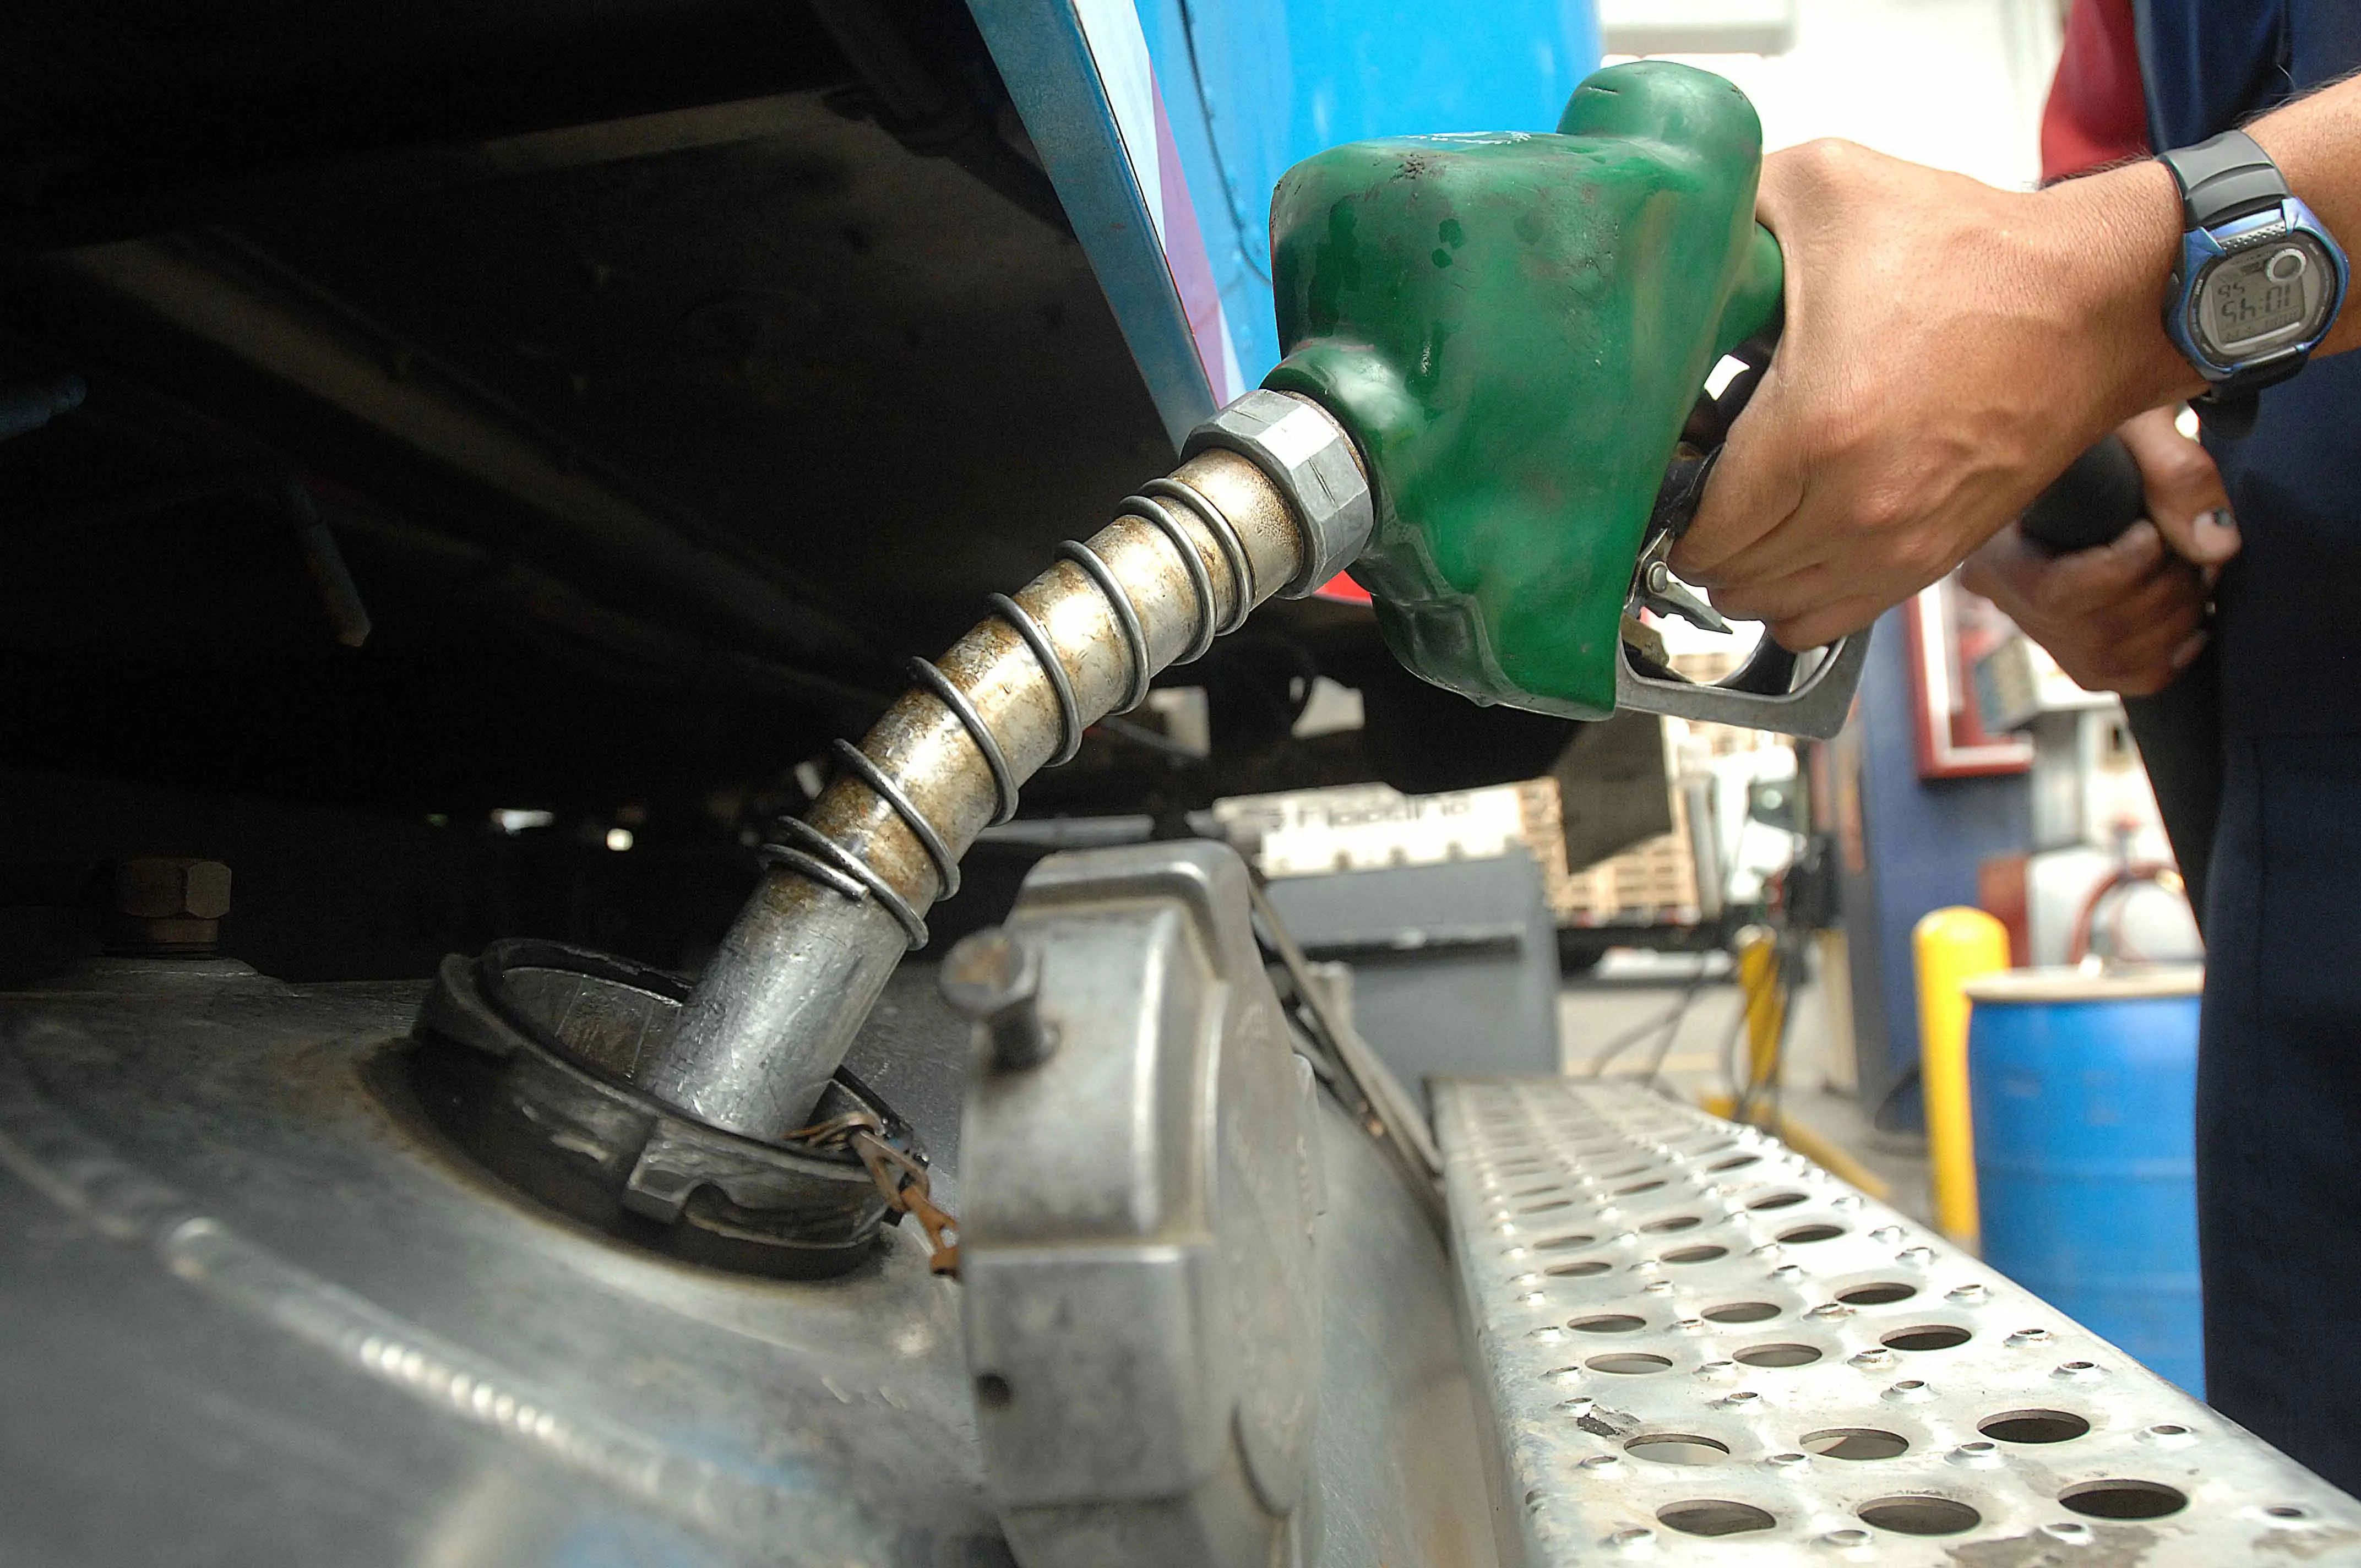 Congelan precios de algunos combustibles y aumentan otros entre RD$2.40 y RD$13.90